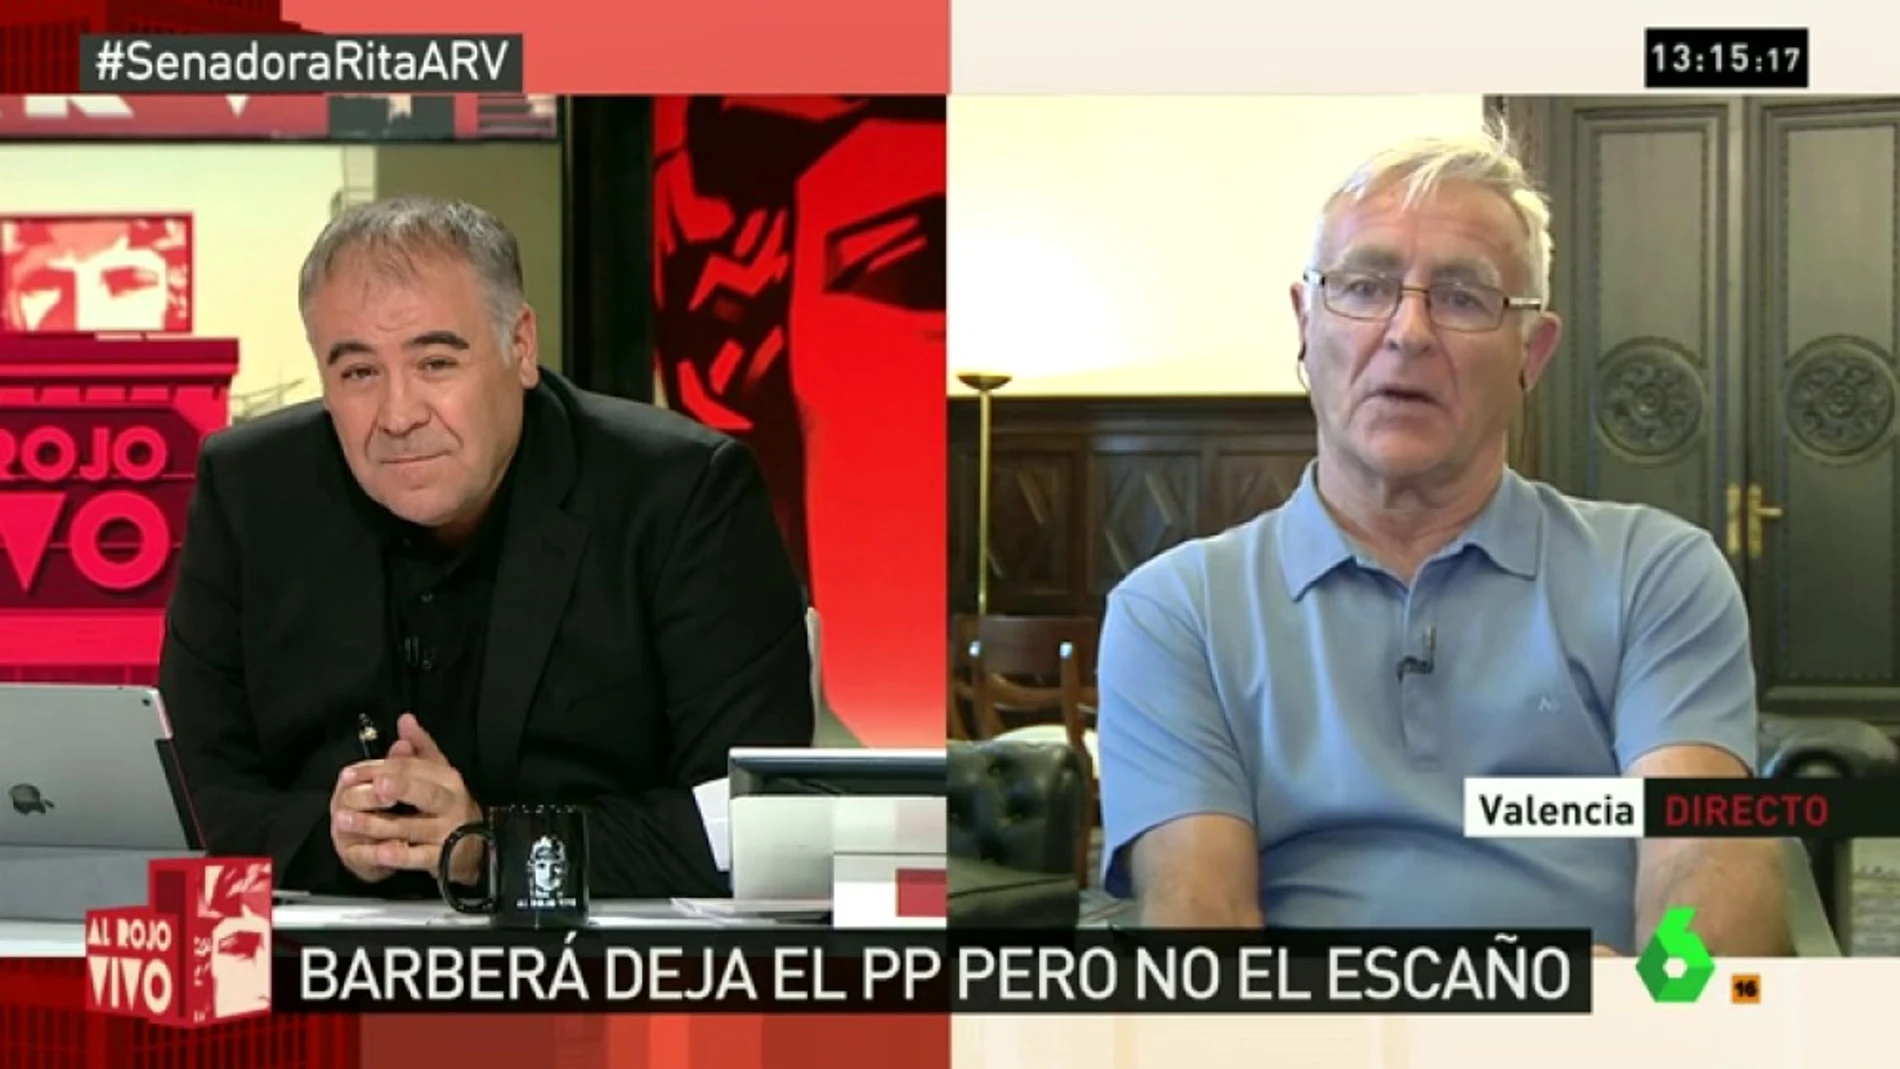 Joan Ribó: "Estamos ante el final de una época oscura que ha perjudicado profundamente a Valencia"